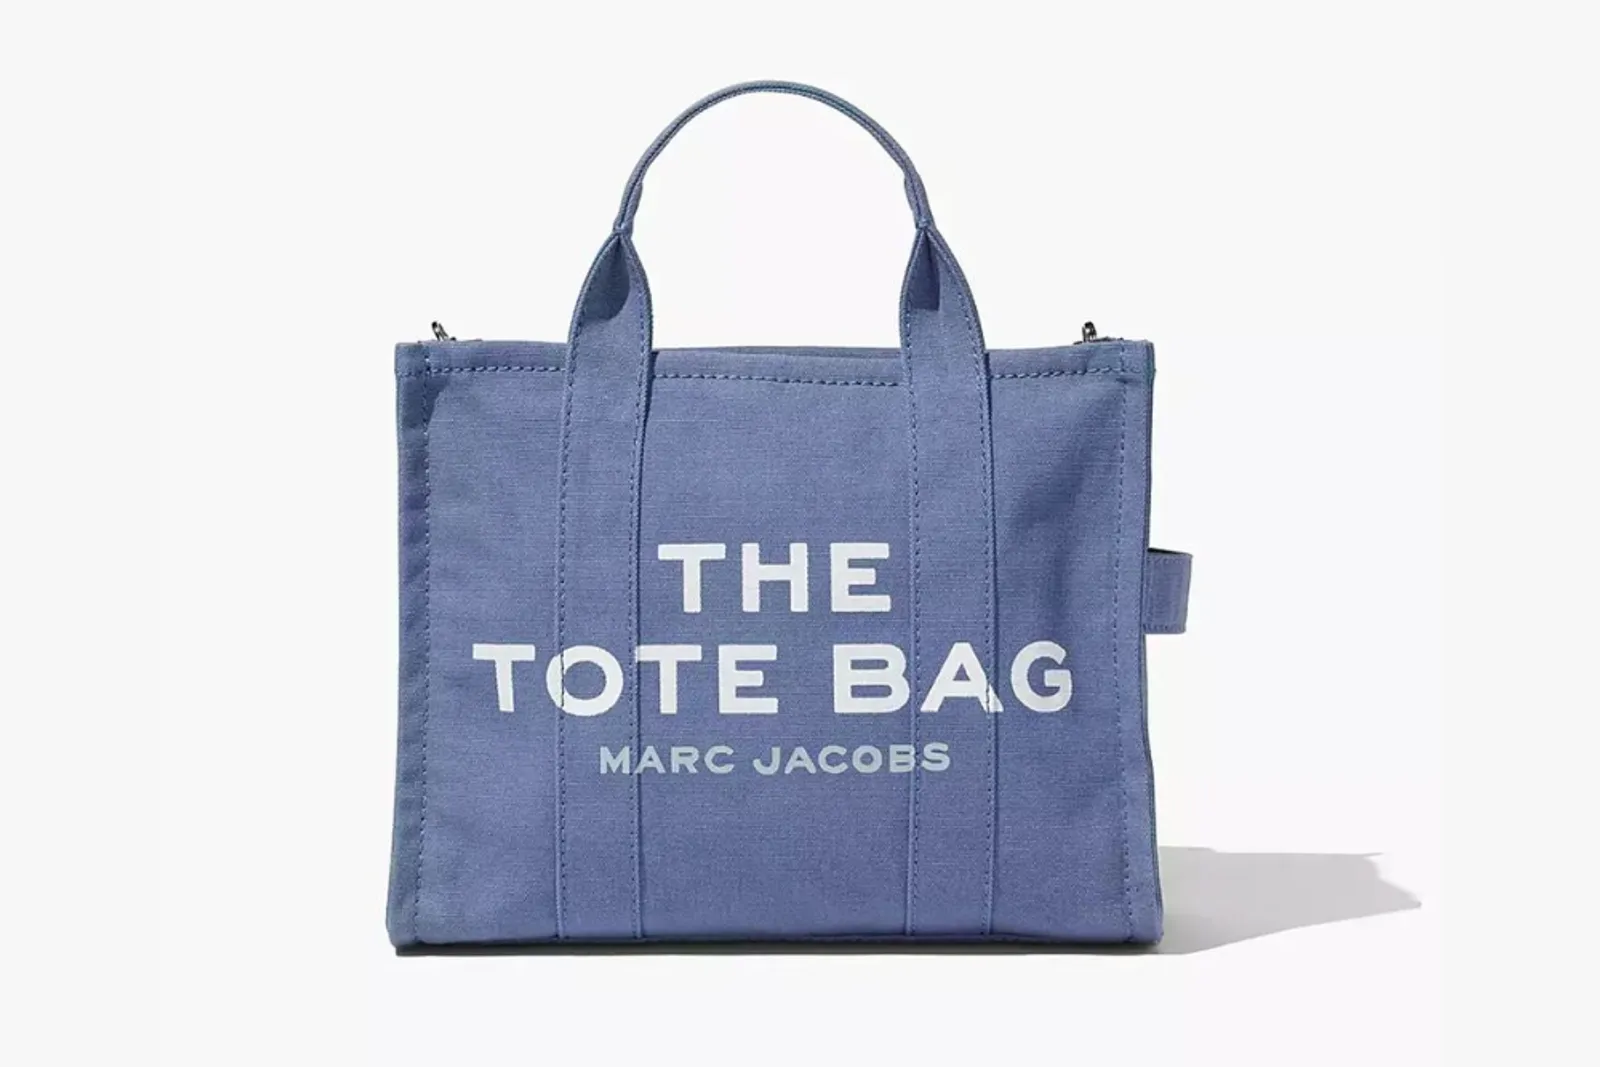 Tote Bag Kanvas Terbaik yang Membuatmu Tampil Fashionable